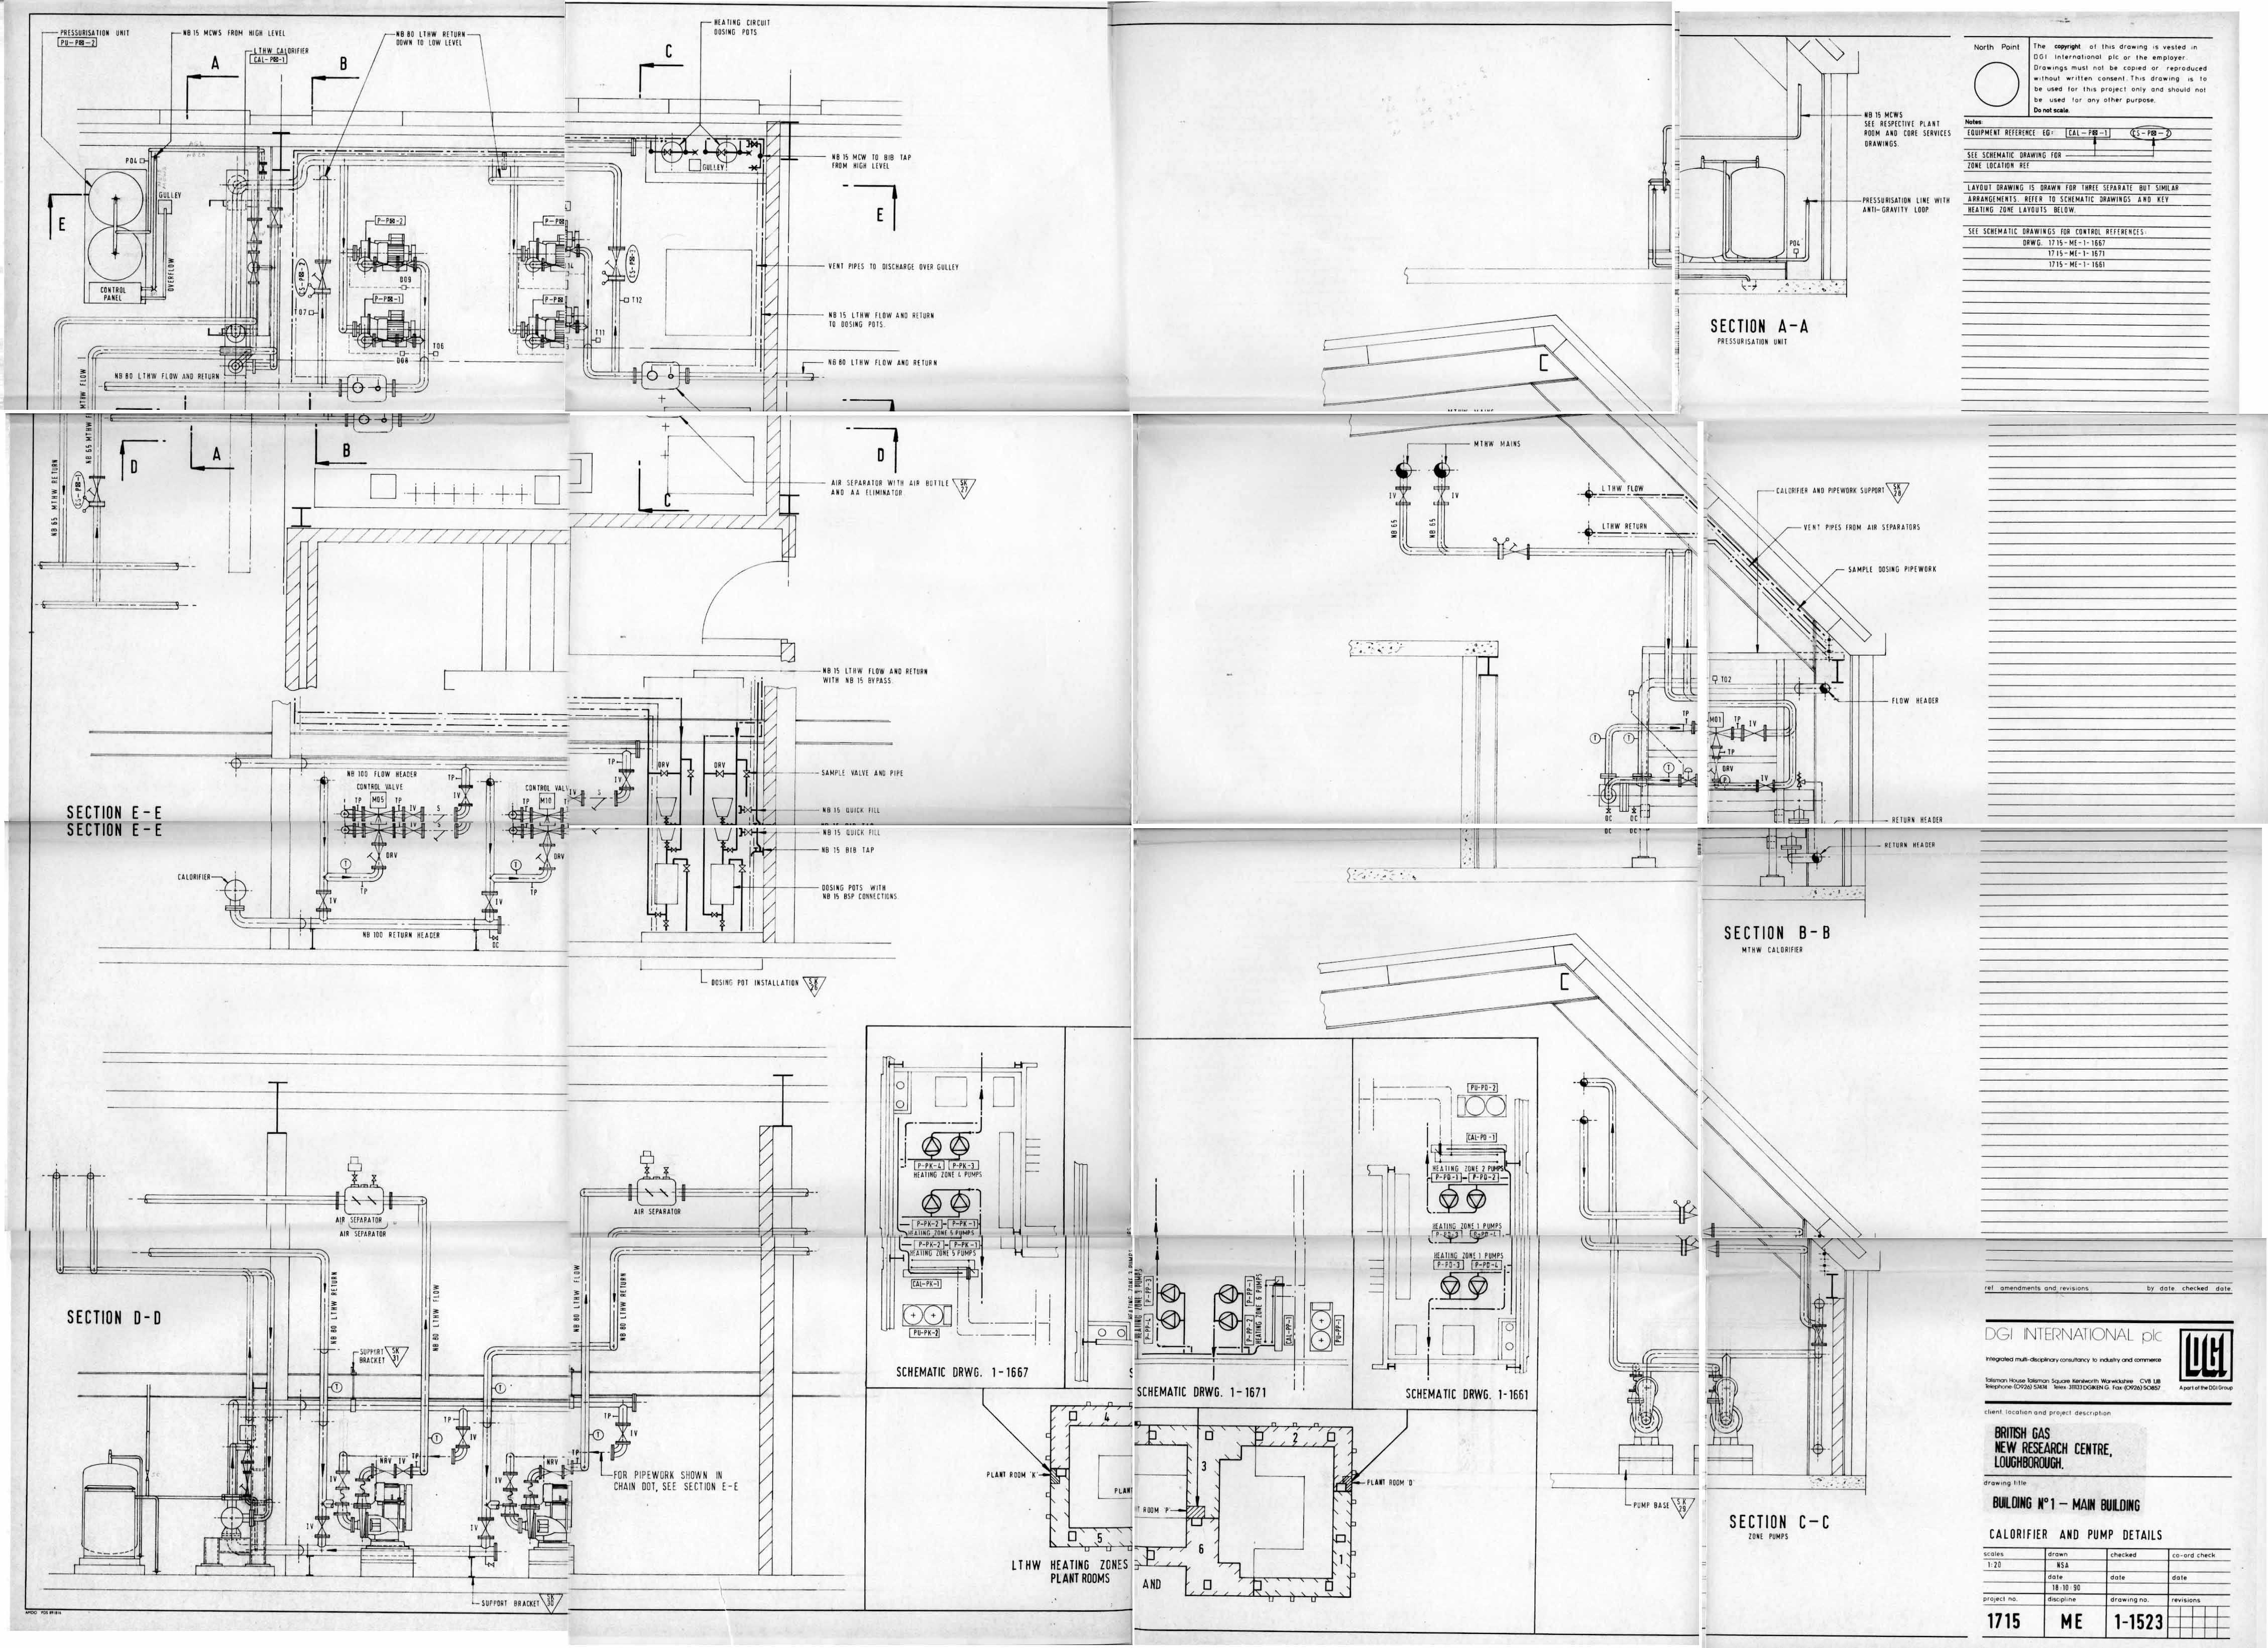 Images Ed 1994 Engineering Drawings/image017.jpg